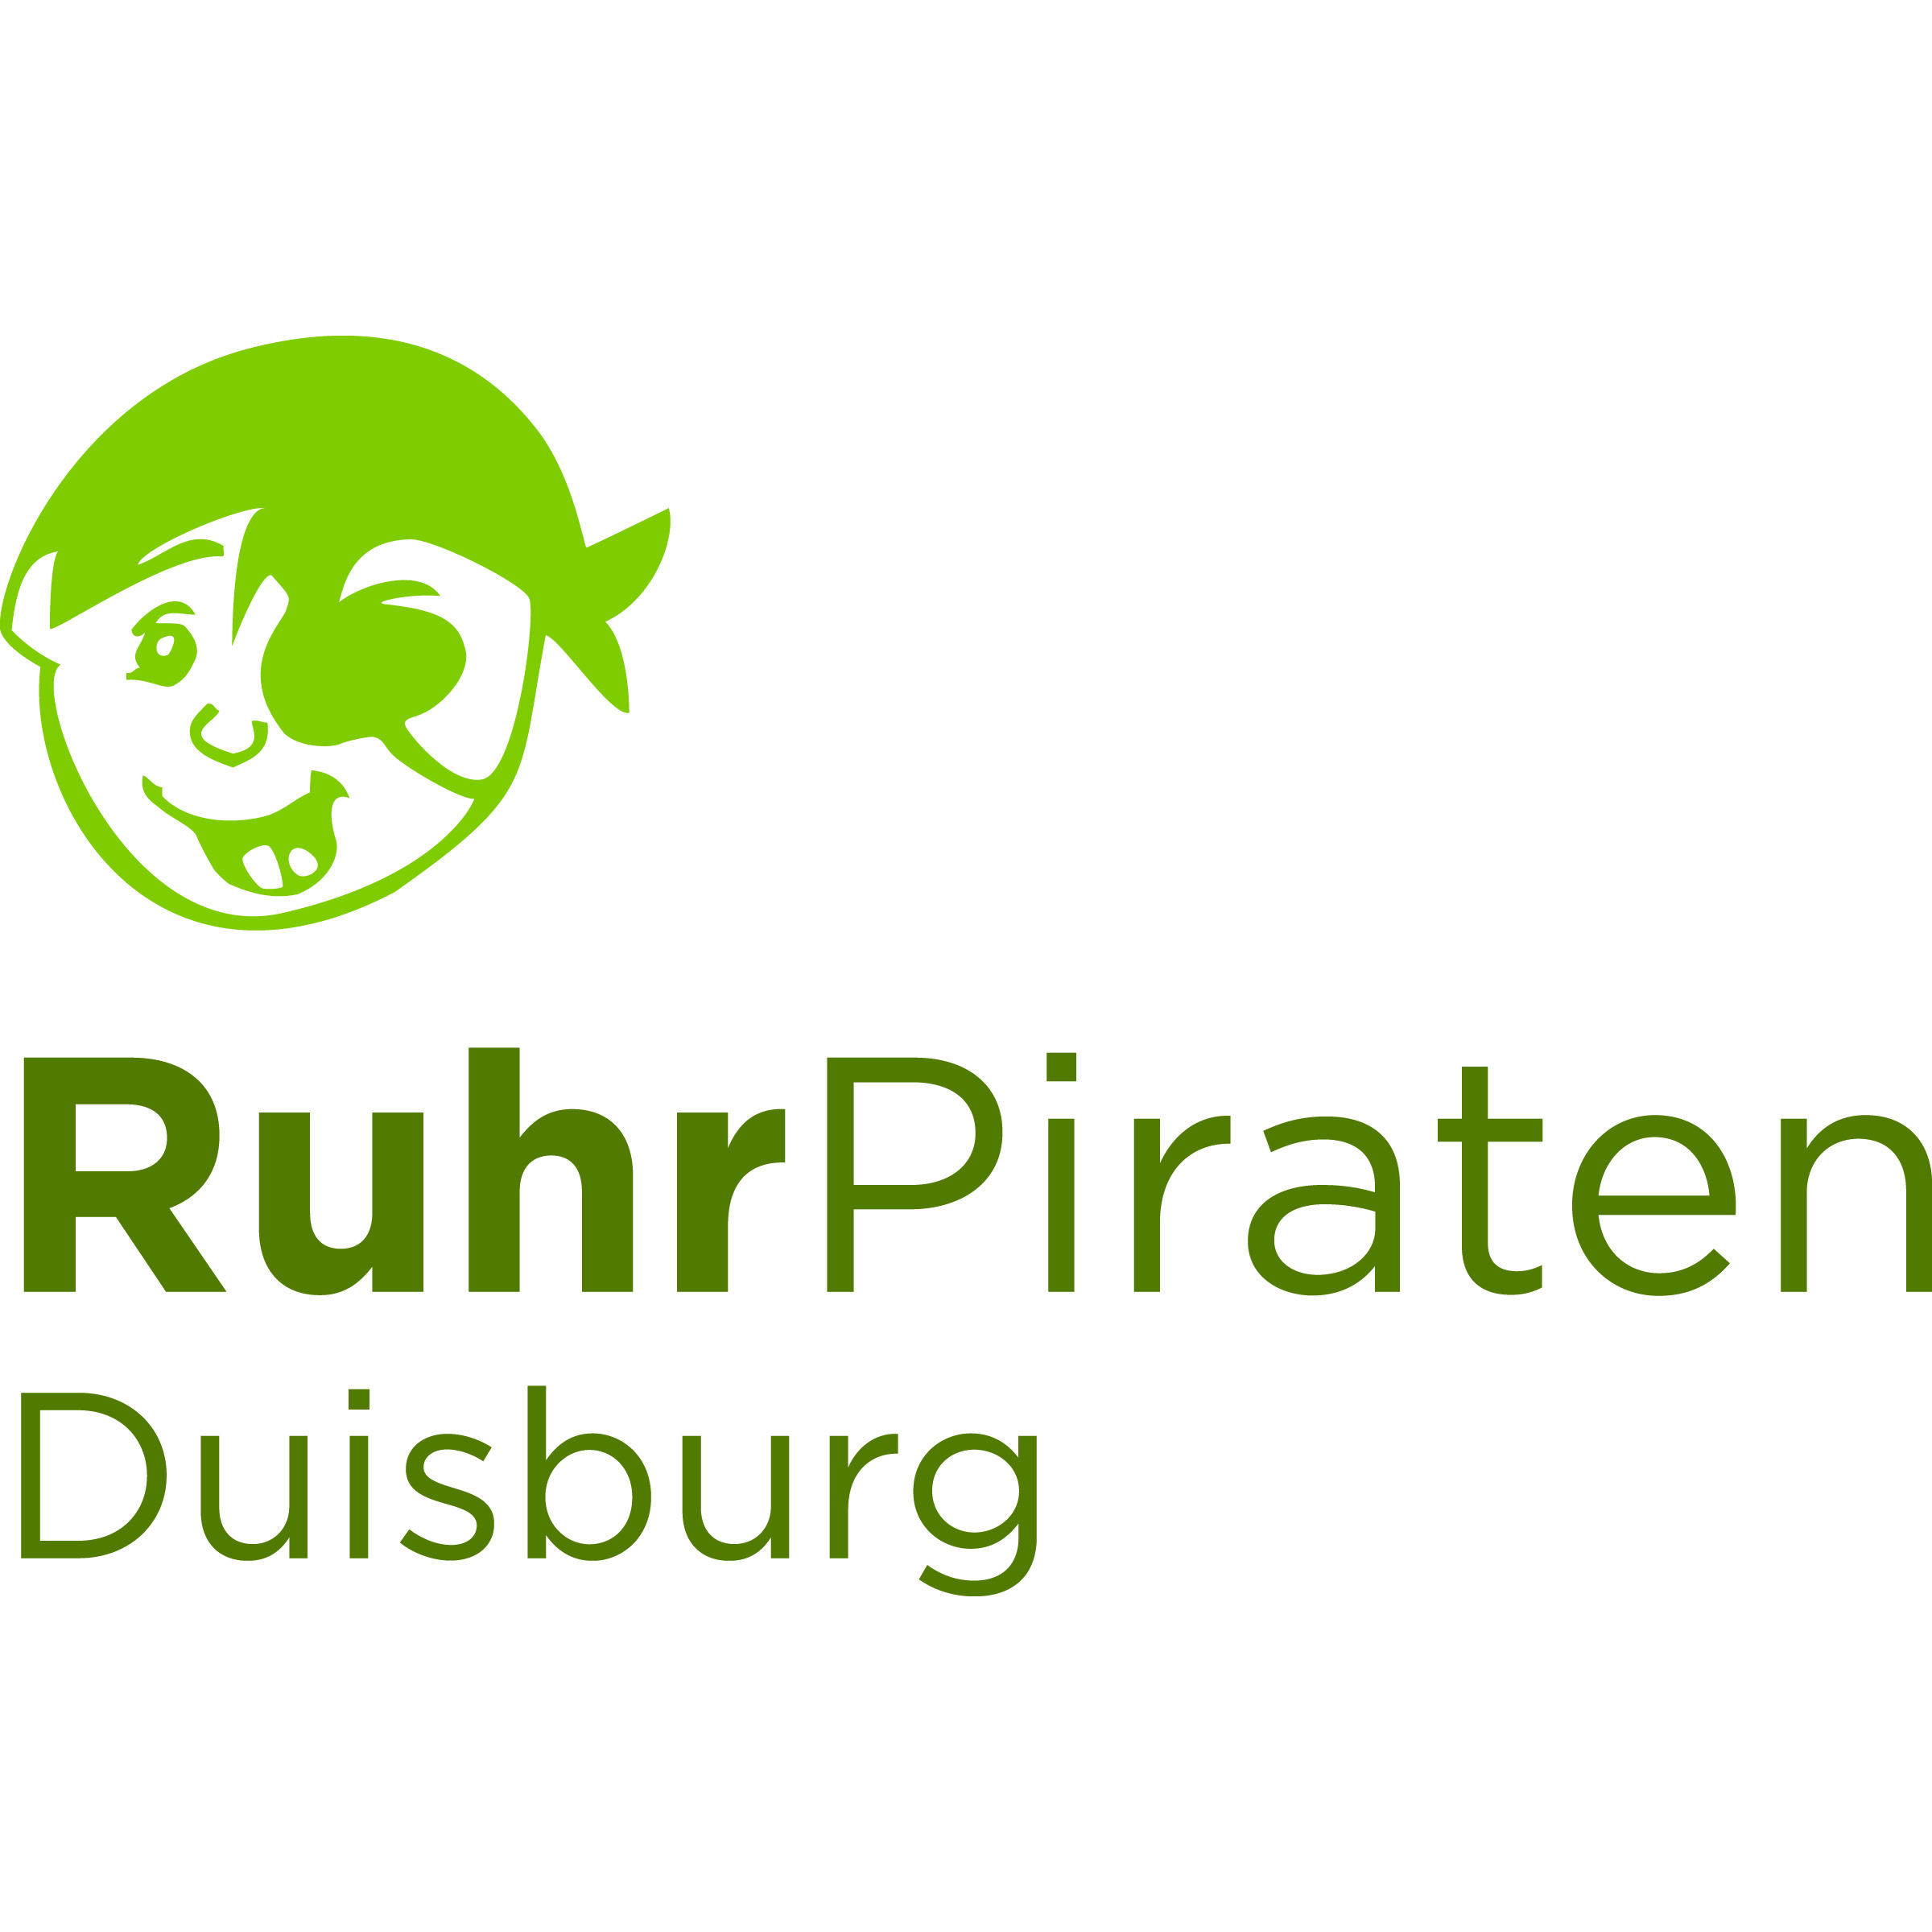 Ruhrpiraten Duisburg - pme Familienservice in Duisburg - Logo